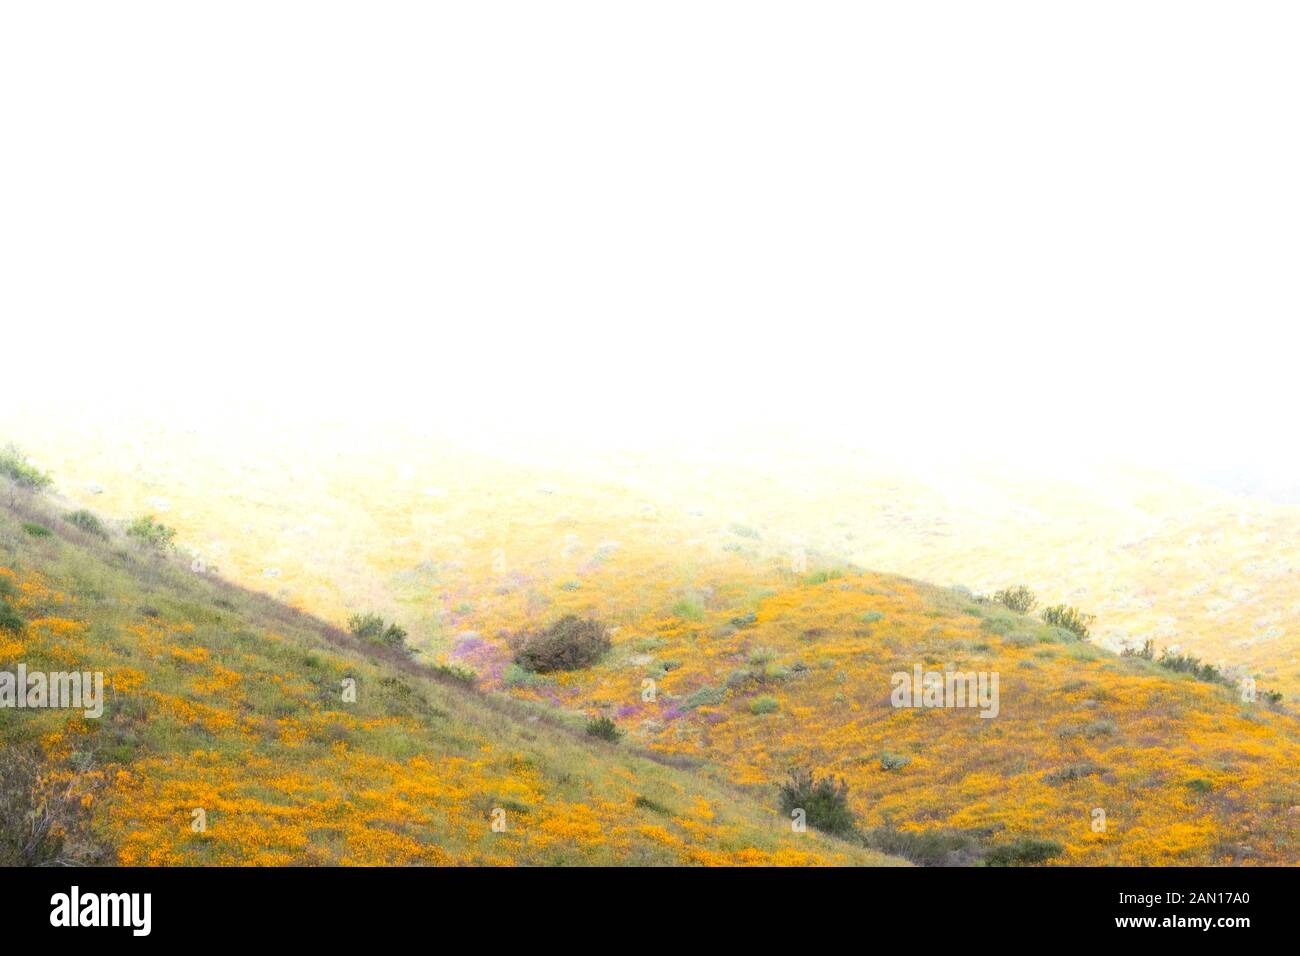 Helles orange pulsierende lebendige goldene Kalifornien Mohnblumen, saisonale Frühling einheimische Pflanze, Wildblumen in voller Blüte, atemberaubende Hanglage superbloom Stockfoto